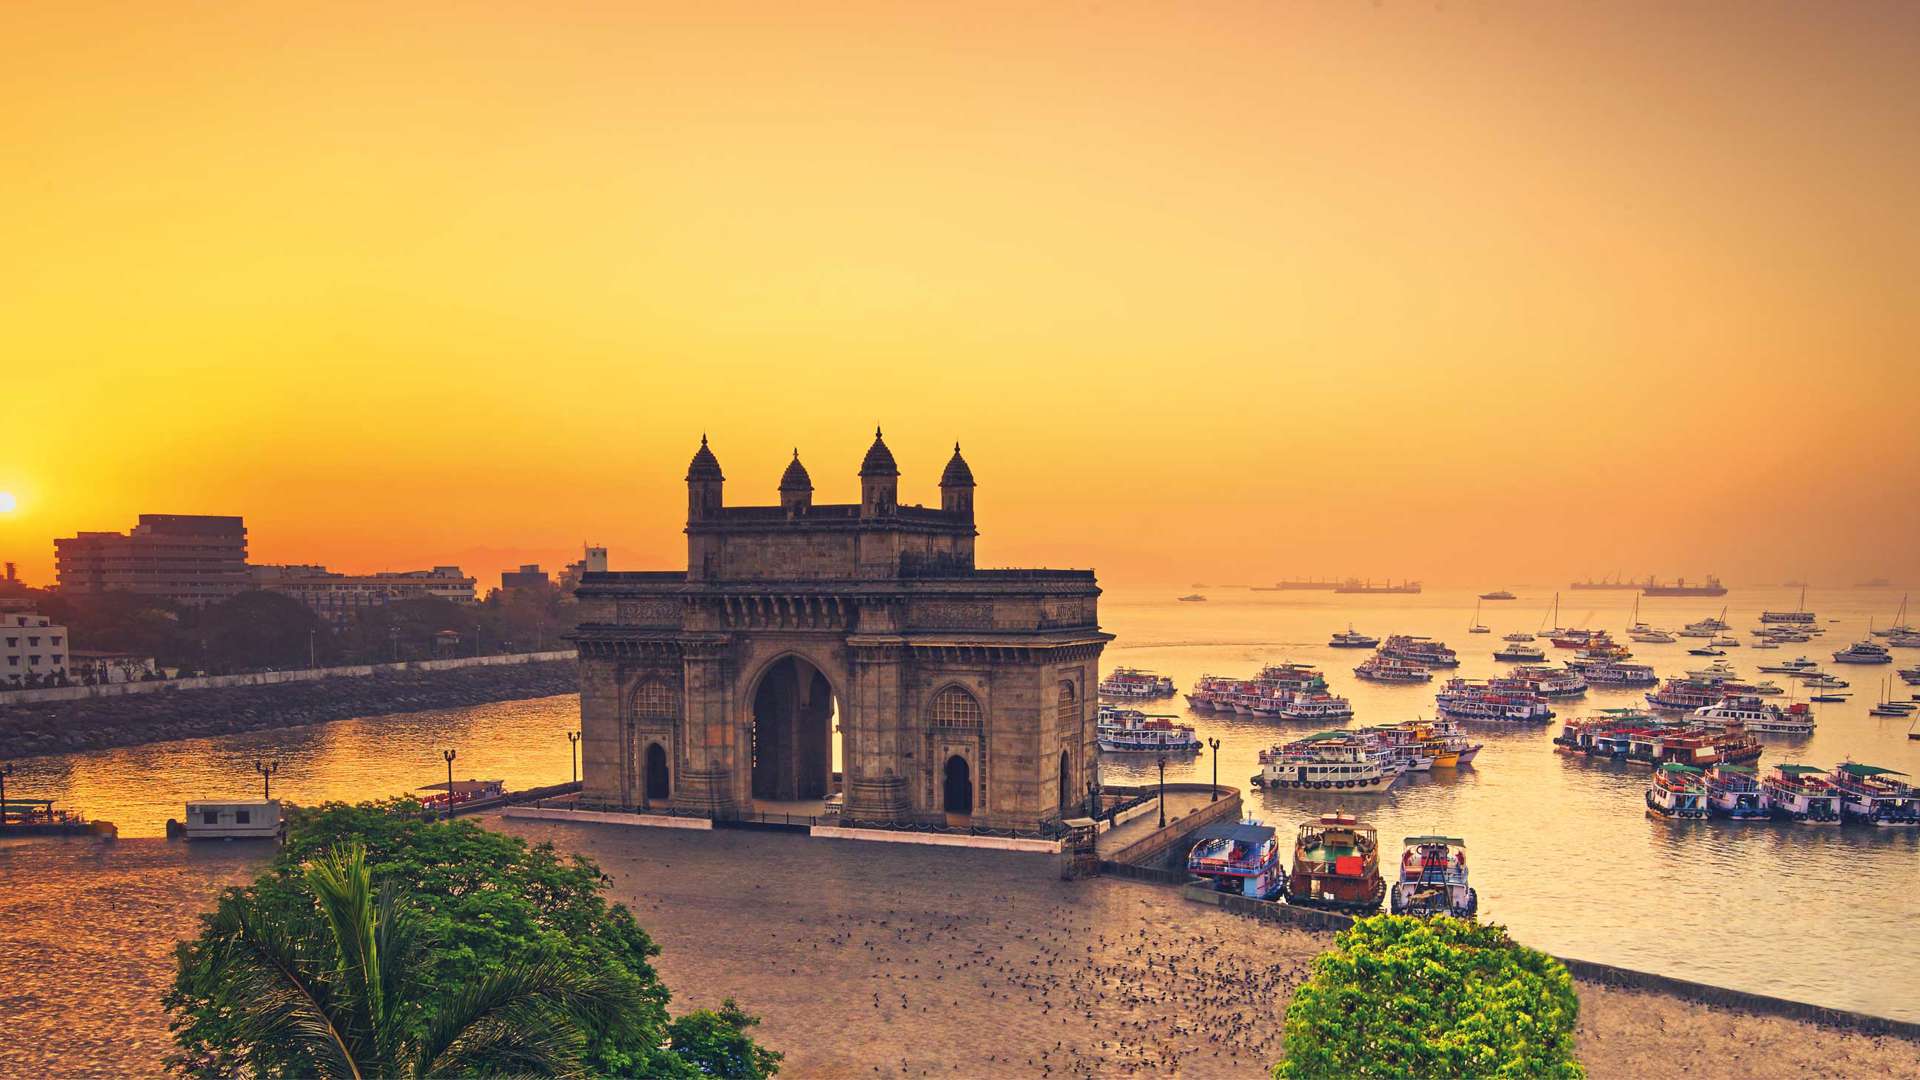 Gateway Of India, Mumbai, India